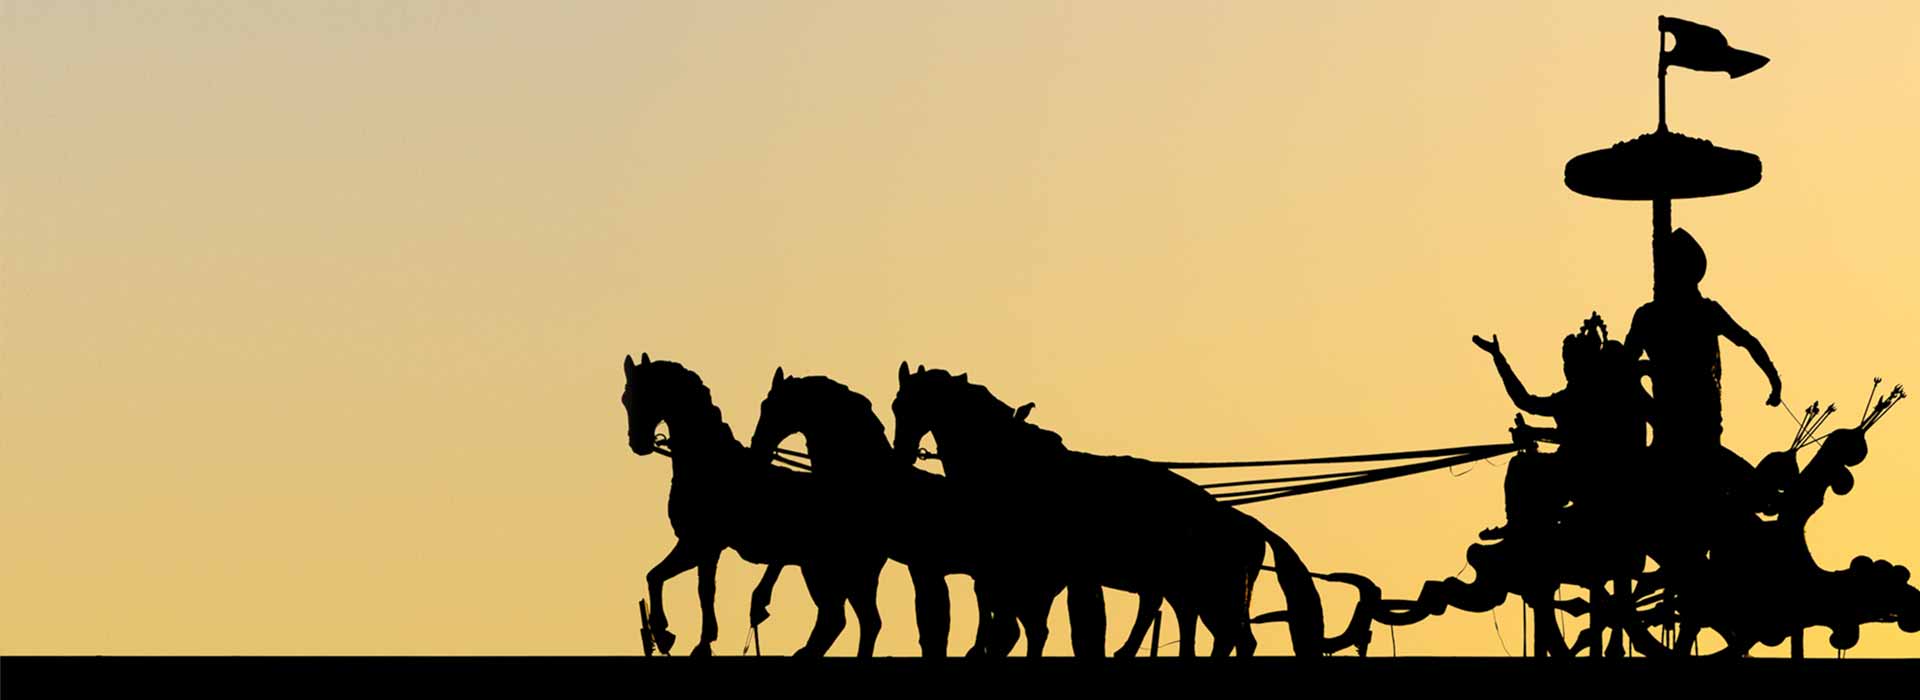 Abbild einer Plastik eines vierspännigen einachsigen indischen Streitwagens mit Wagenlenker und aufrecht stehender Gottheit Mahabharata mit überdimensionalem zeremoniellem Sonnenschirm als schwarze Silhouette vor rotgelbem wolkenlosen Abendhimmel